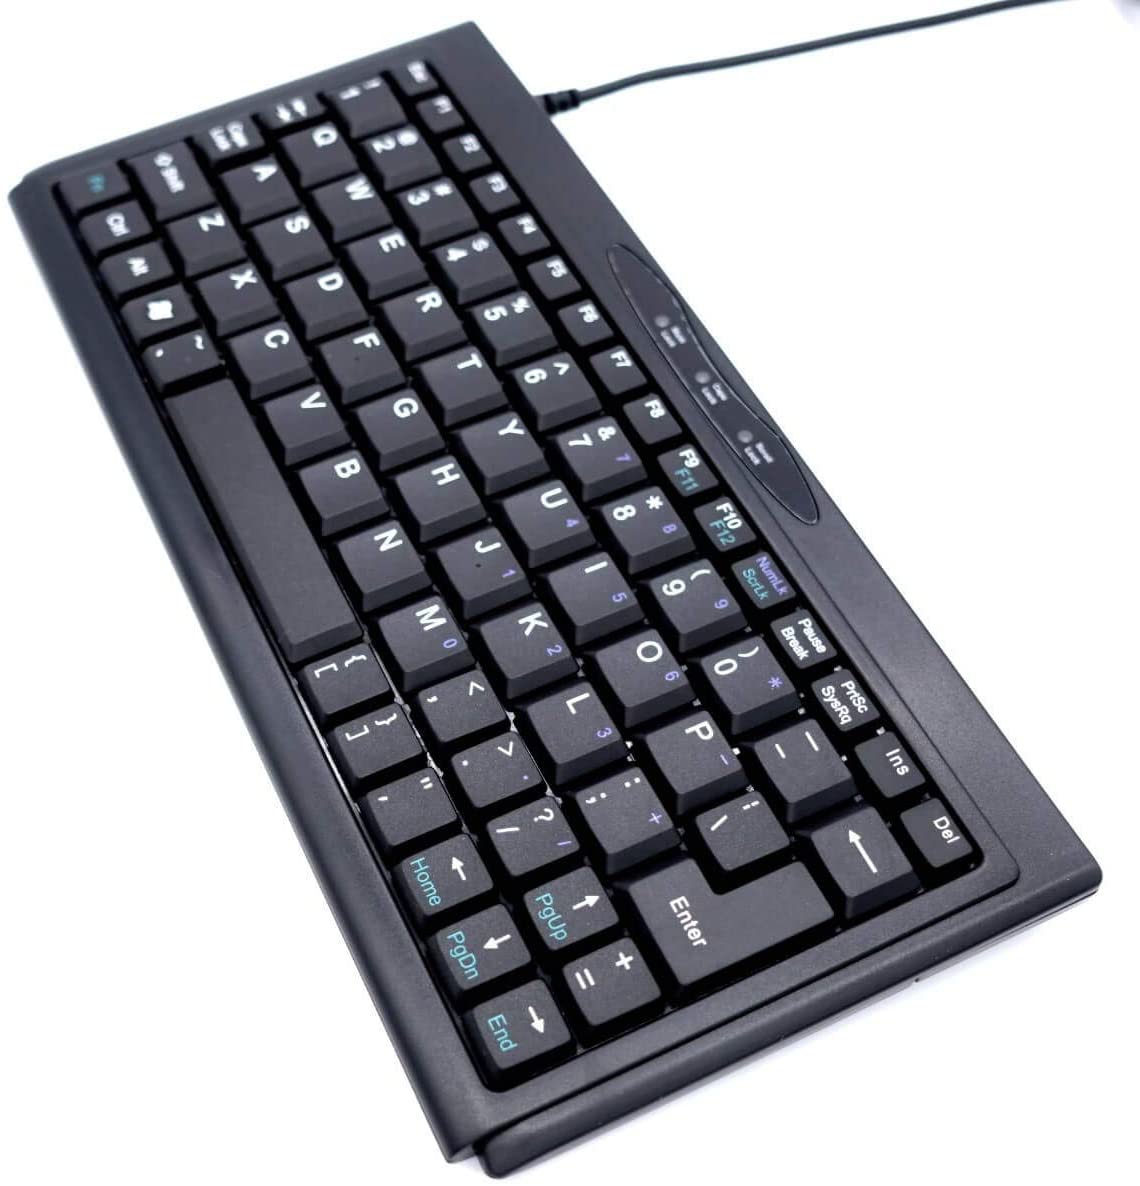 SolidTek ASK-3100U Keyboard Cover